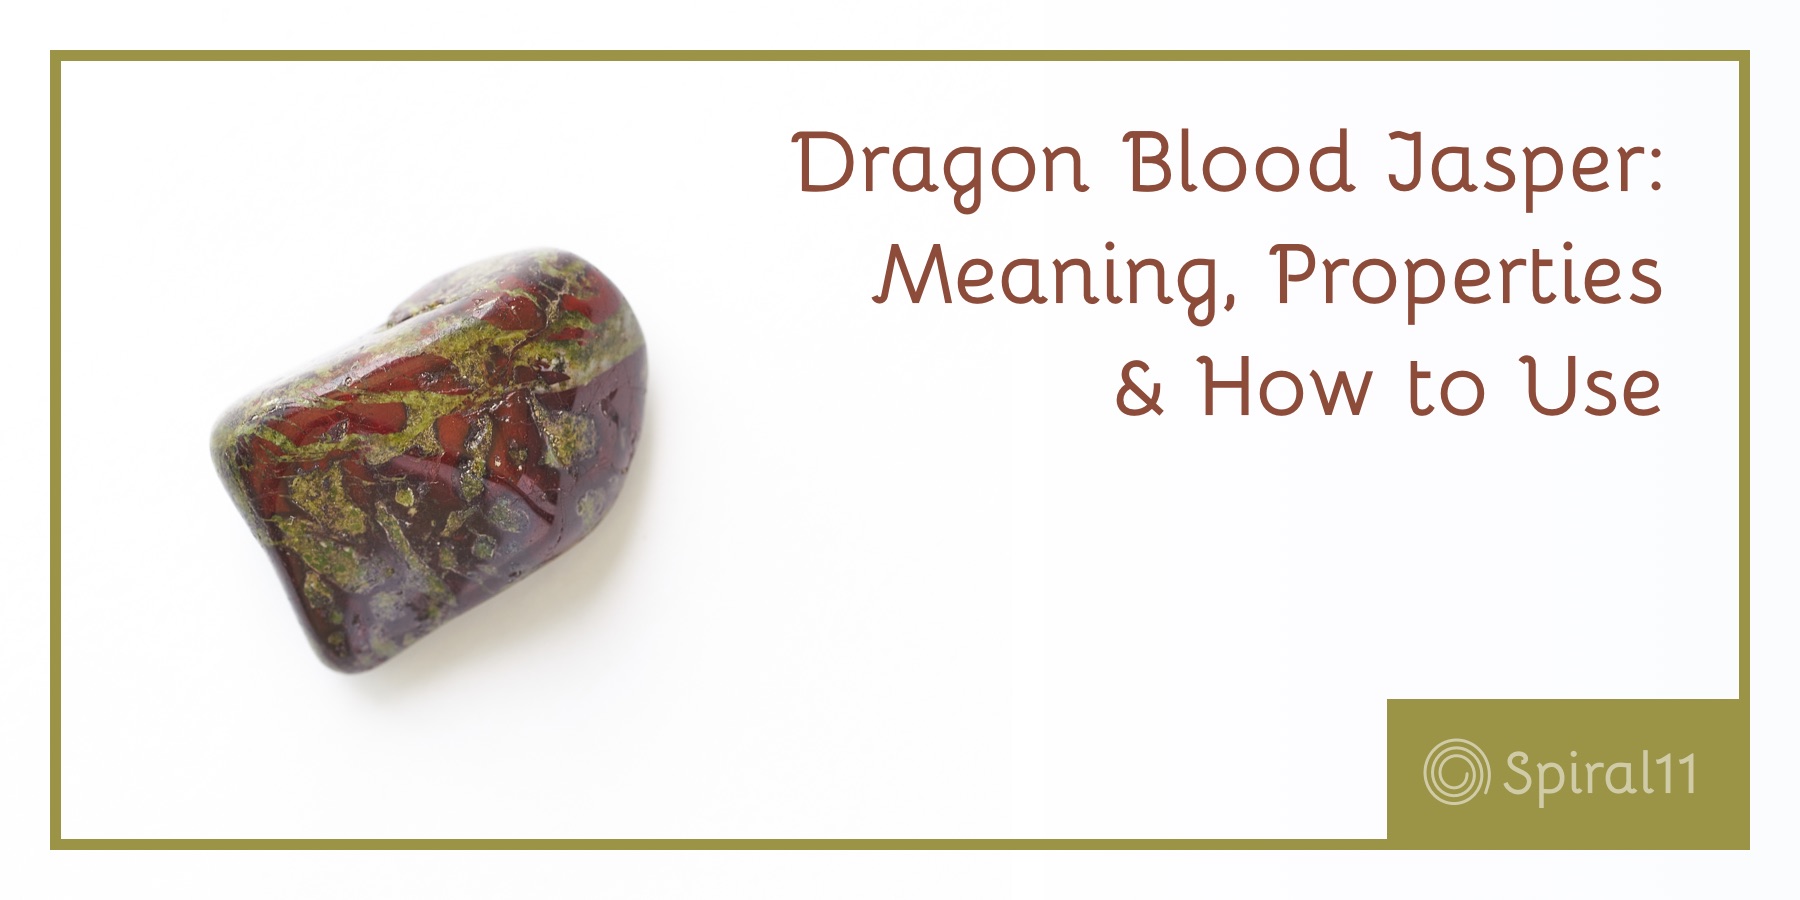 Dragon Blood Jasper Meaning Metaphysical Healing Properties Spiral11